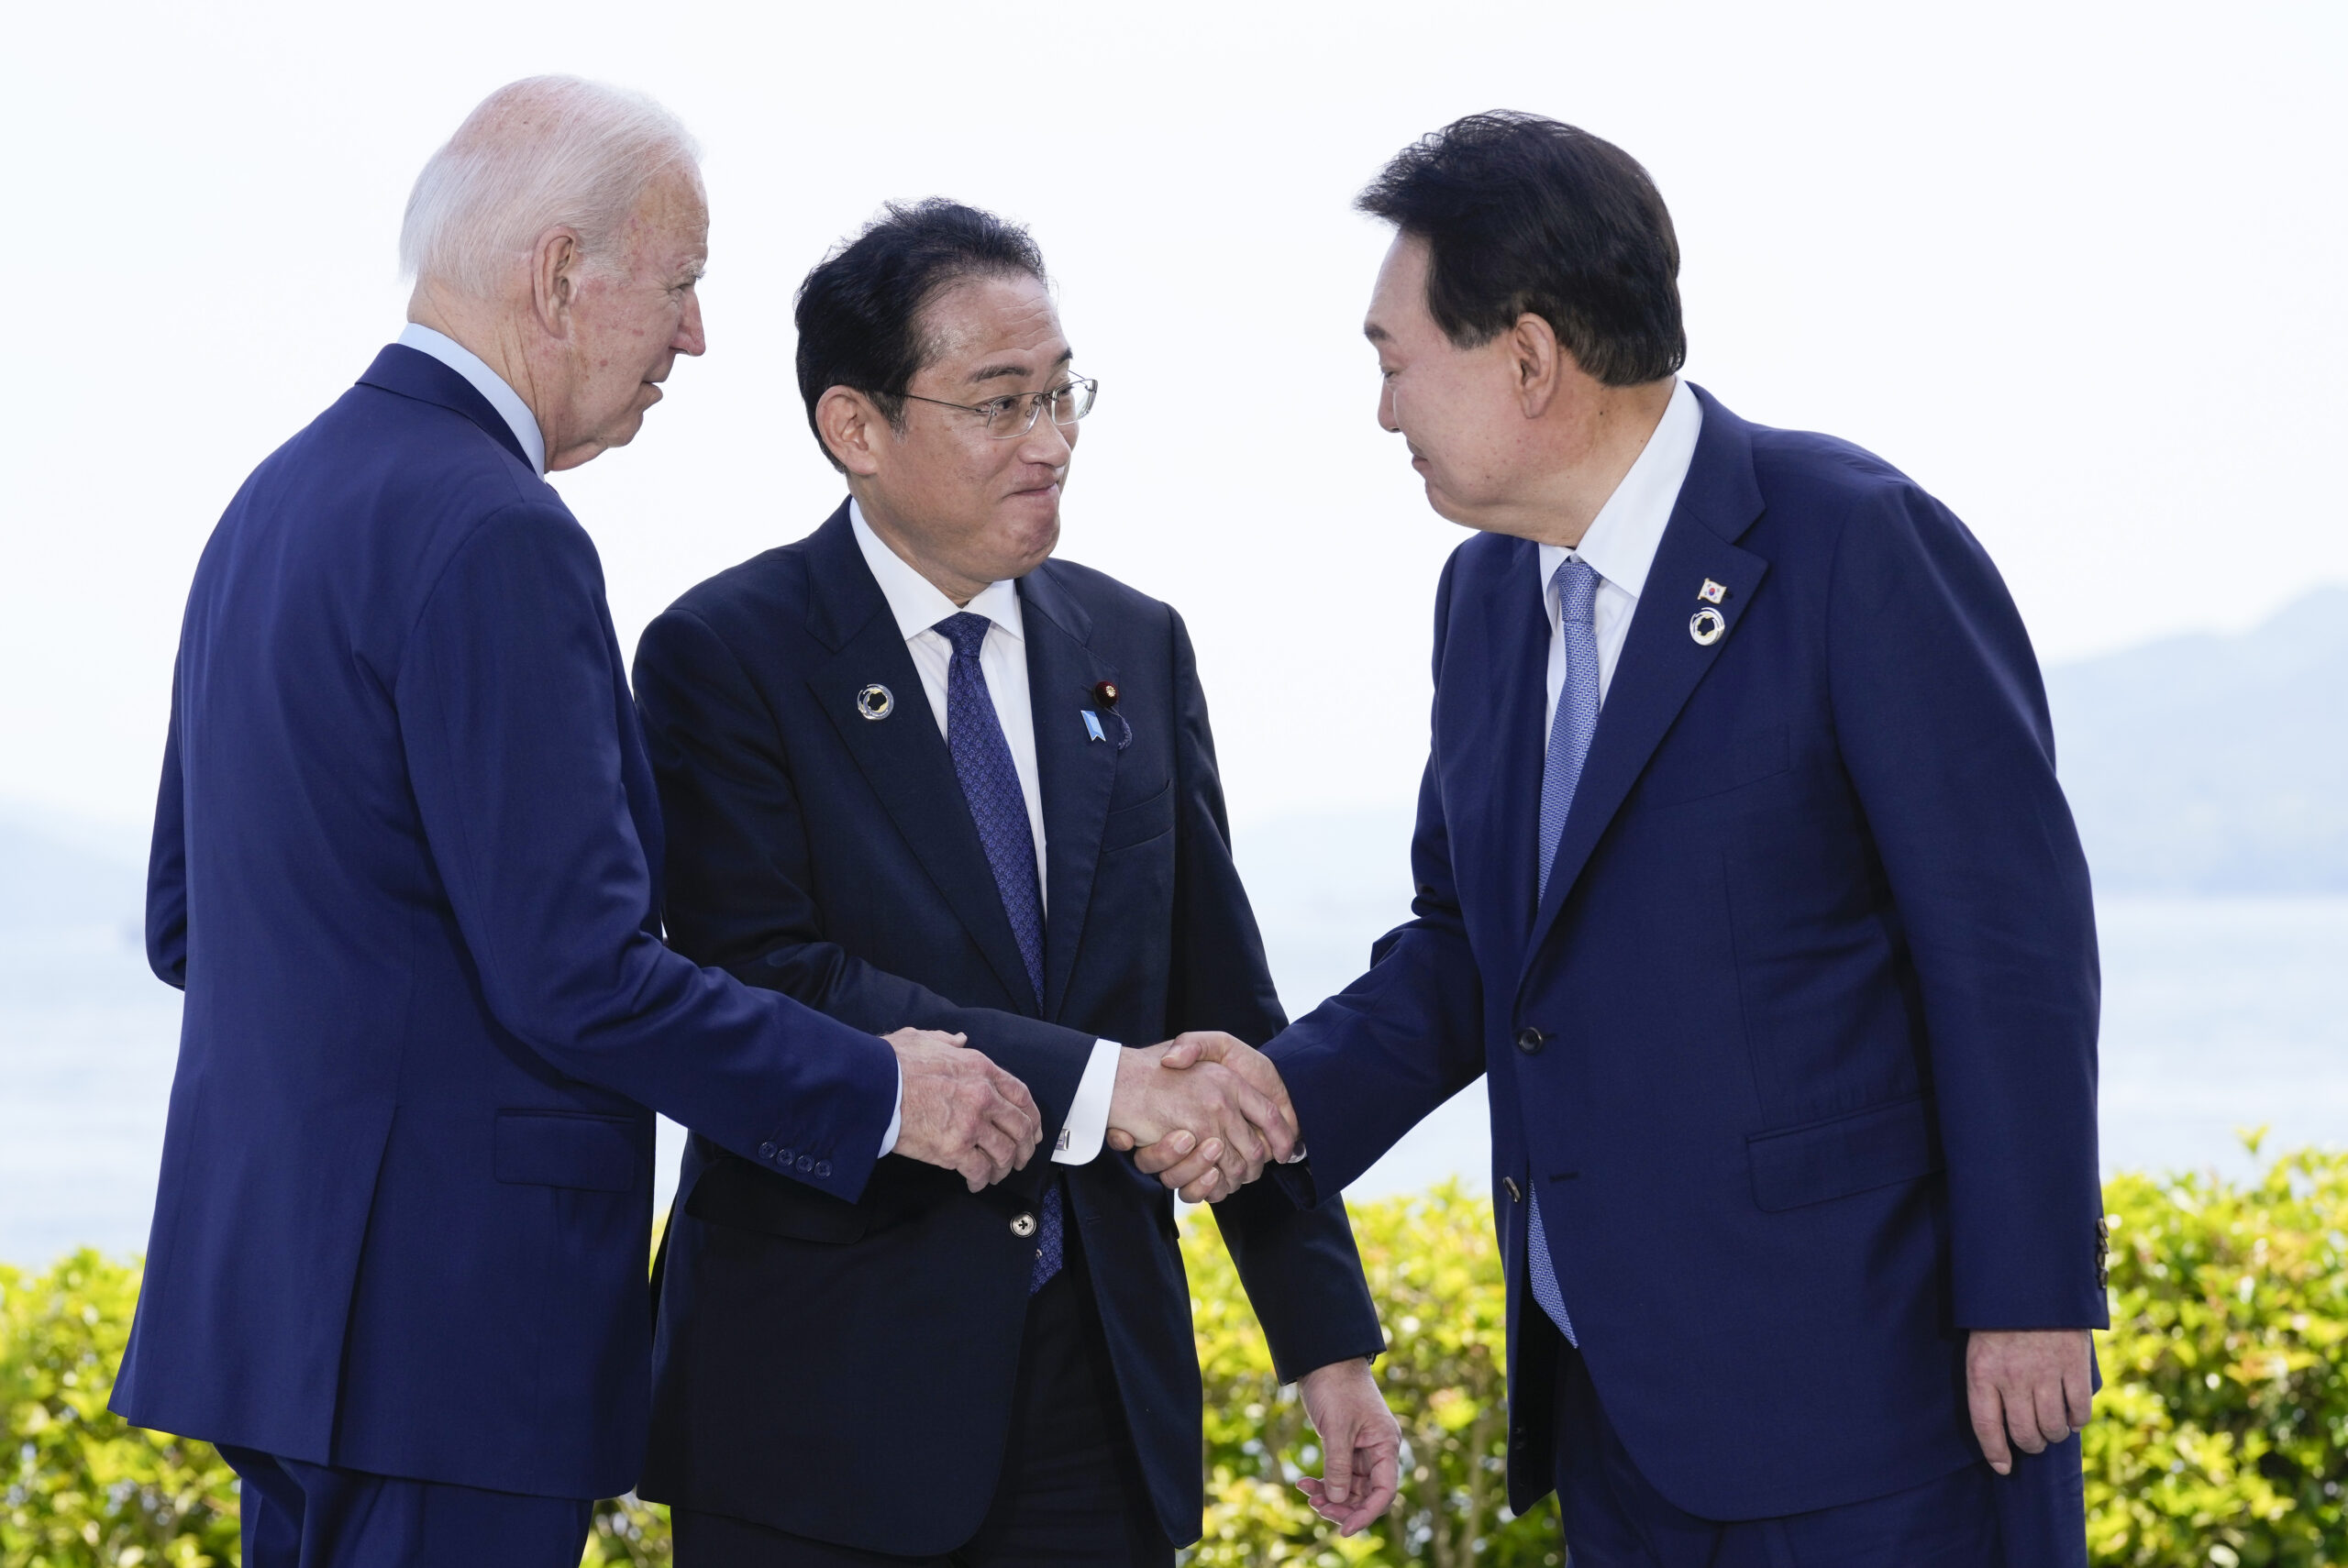 Τριμερής σύνοδος ΗΠΑ – Ιαπωνίας – Νότιας Κορέας στο Κάμπ Ντέιβιντ με το «βλέμμα» στην Κίνα